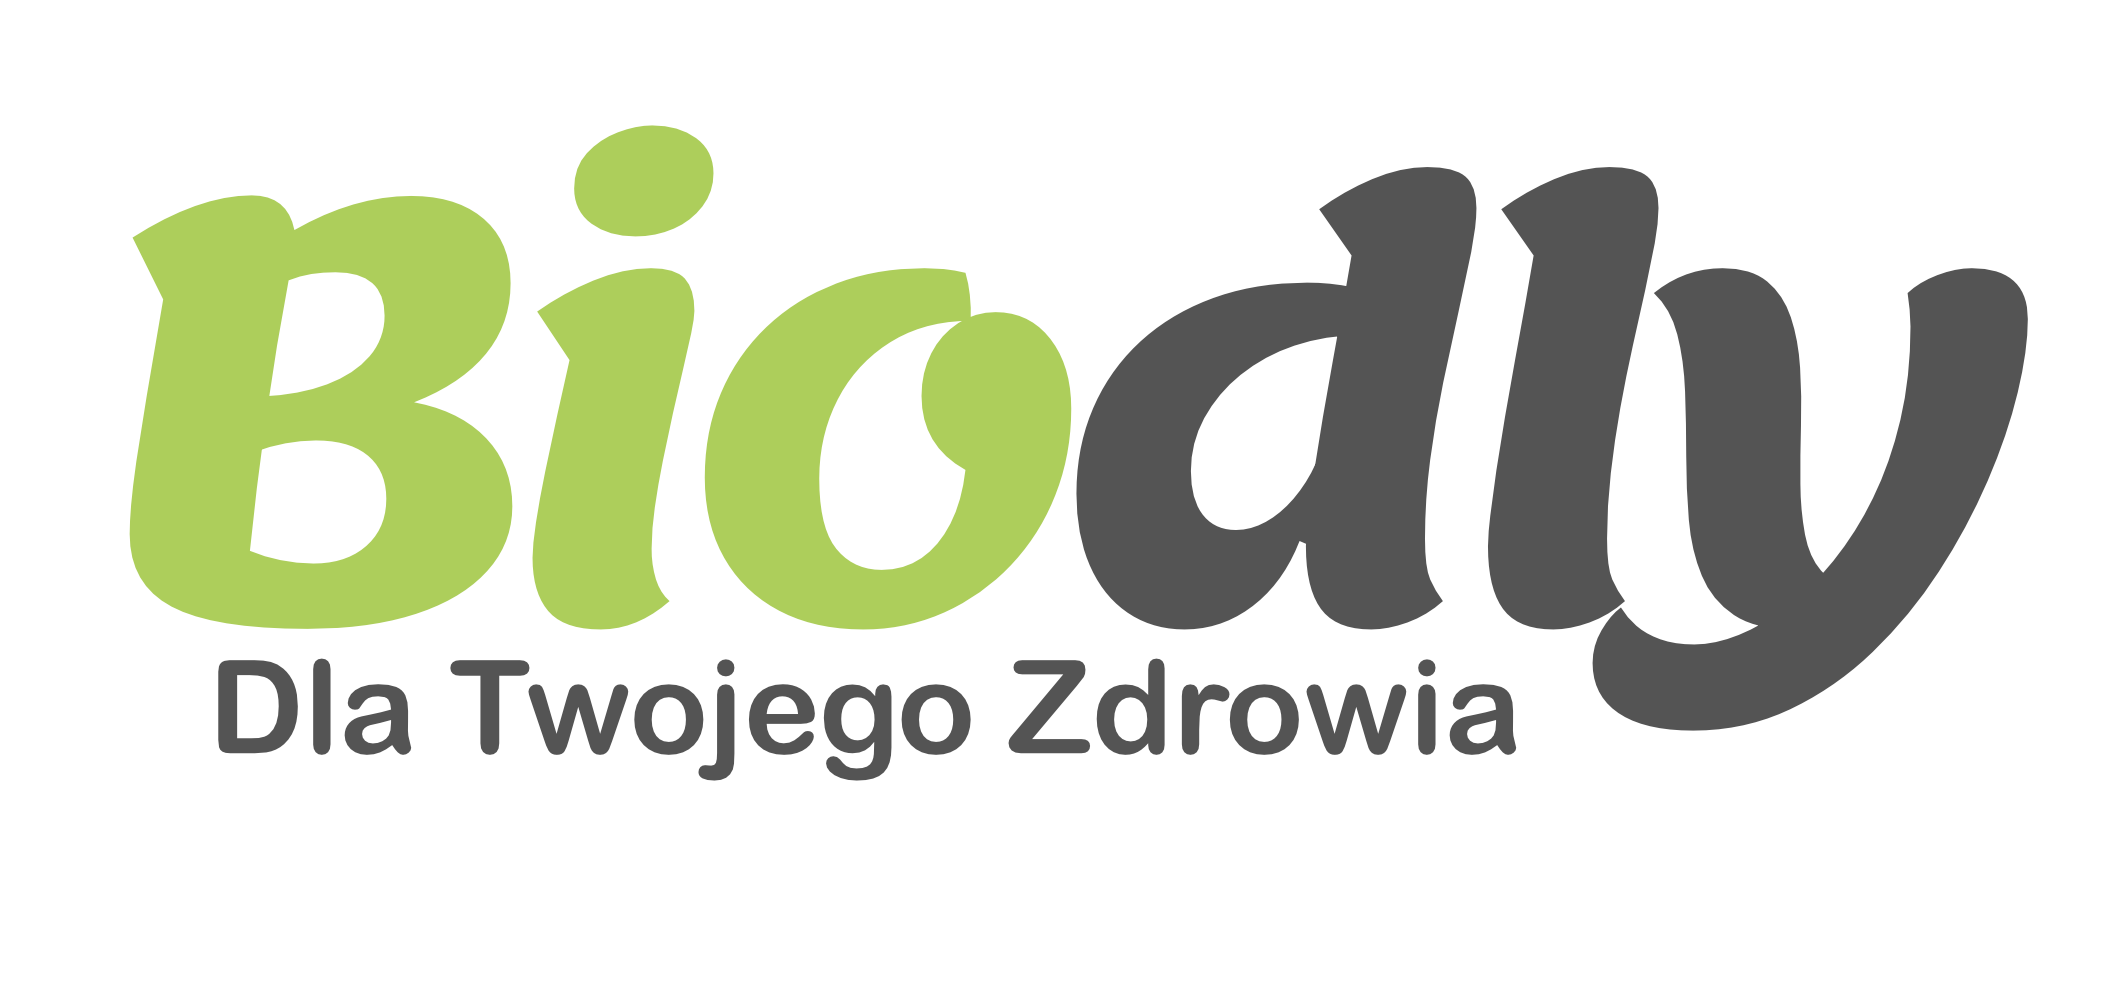 Internetowy sklep ekologiczny - Biodlly.pl